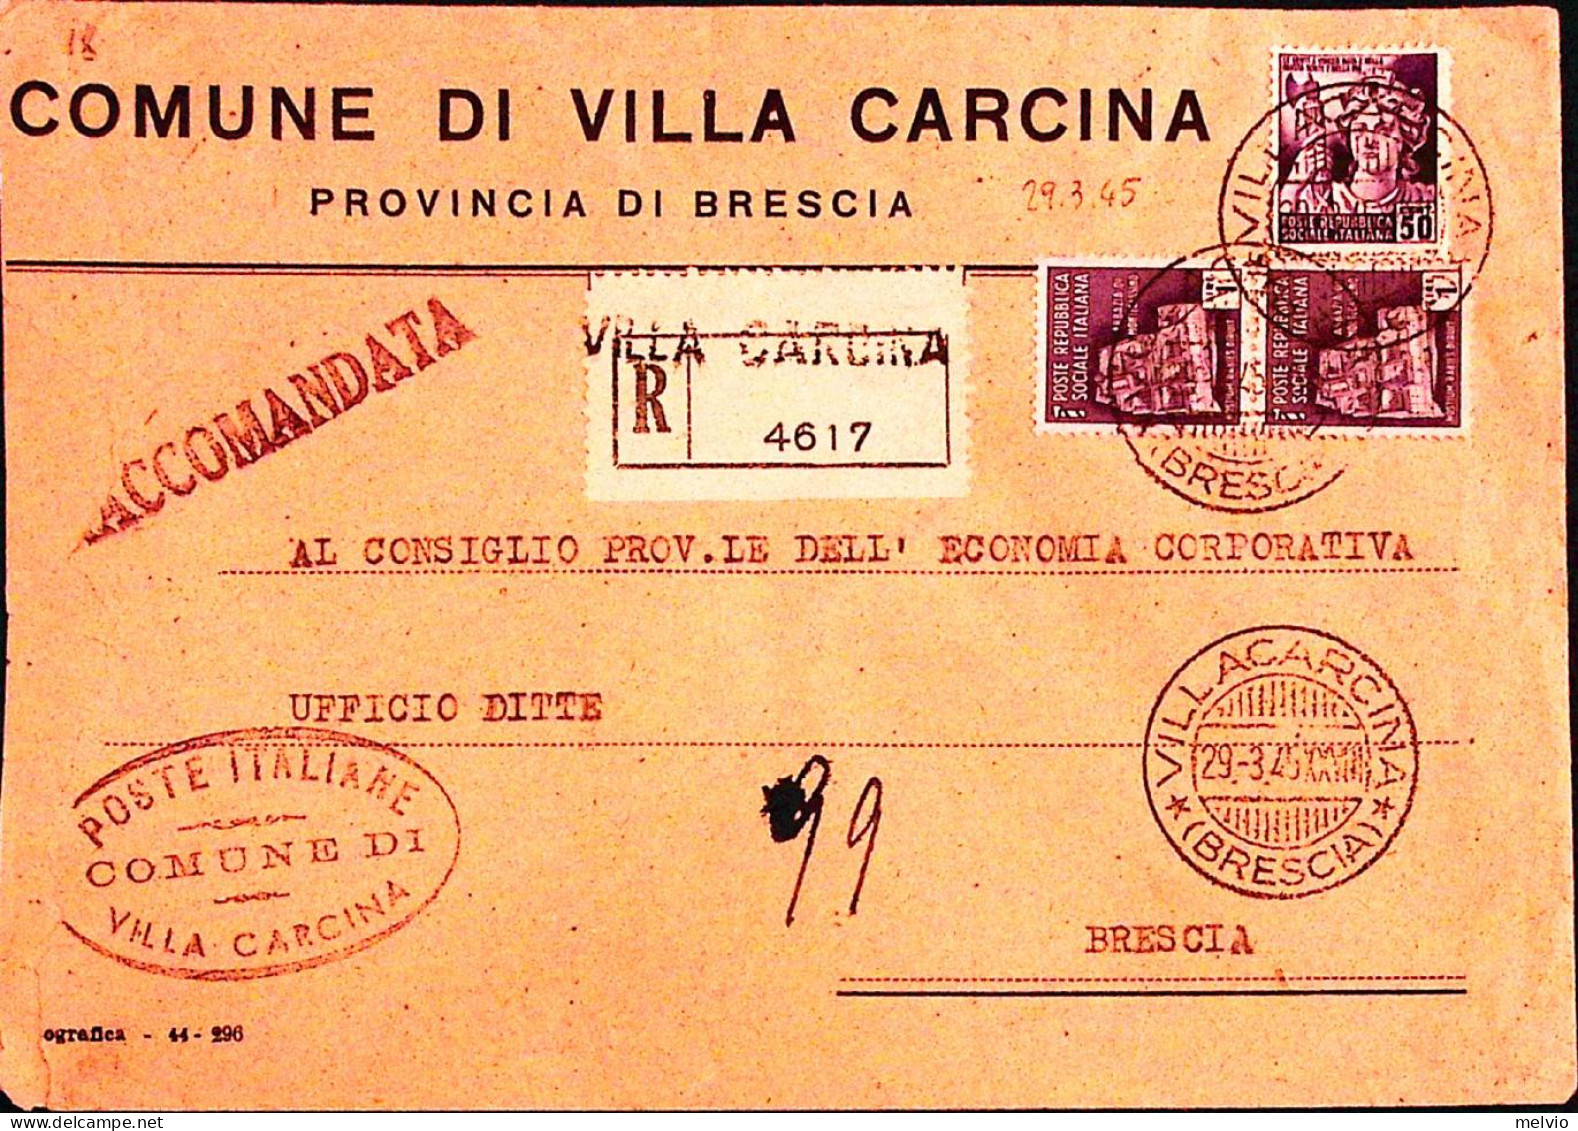 1945-Monumenti C.5 E Coppia Lire 1 Su Raccomandata Villa Carcina (29.3) - Marcofilía